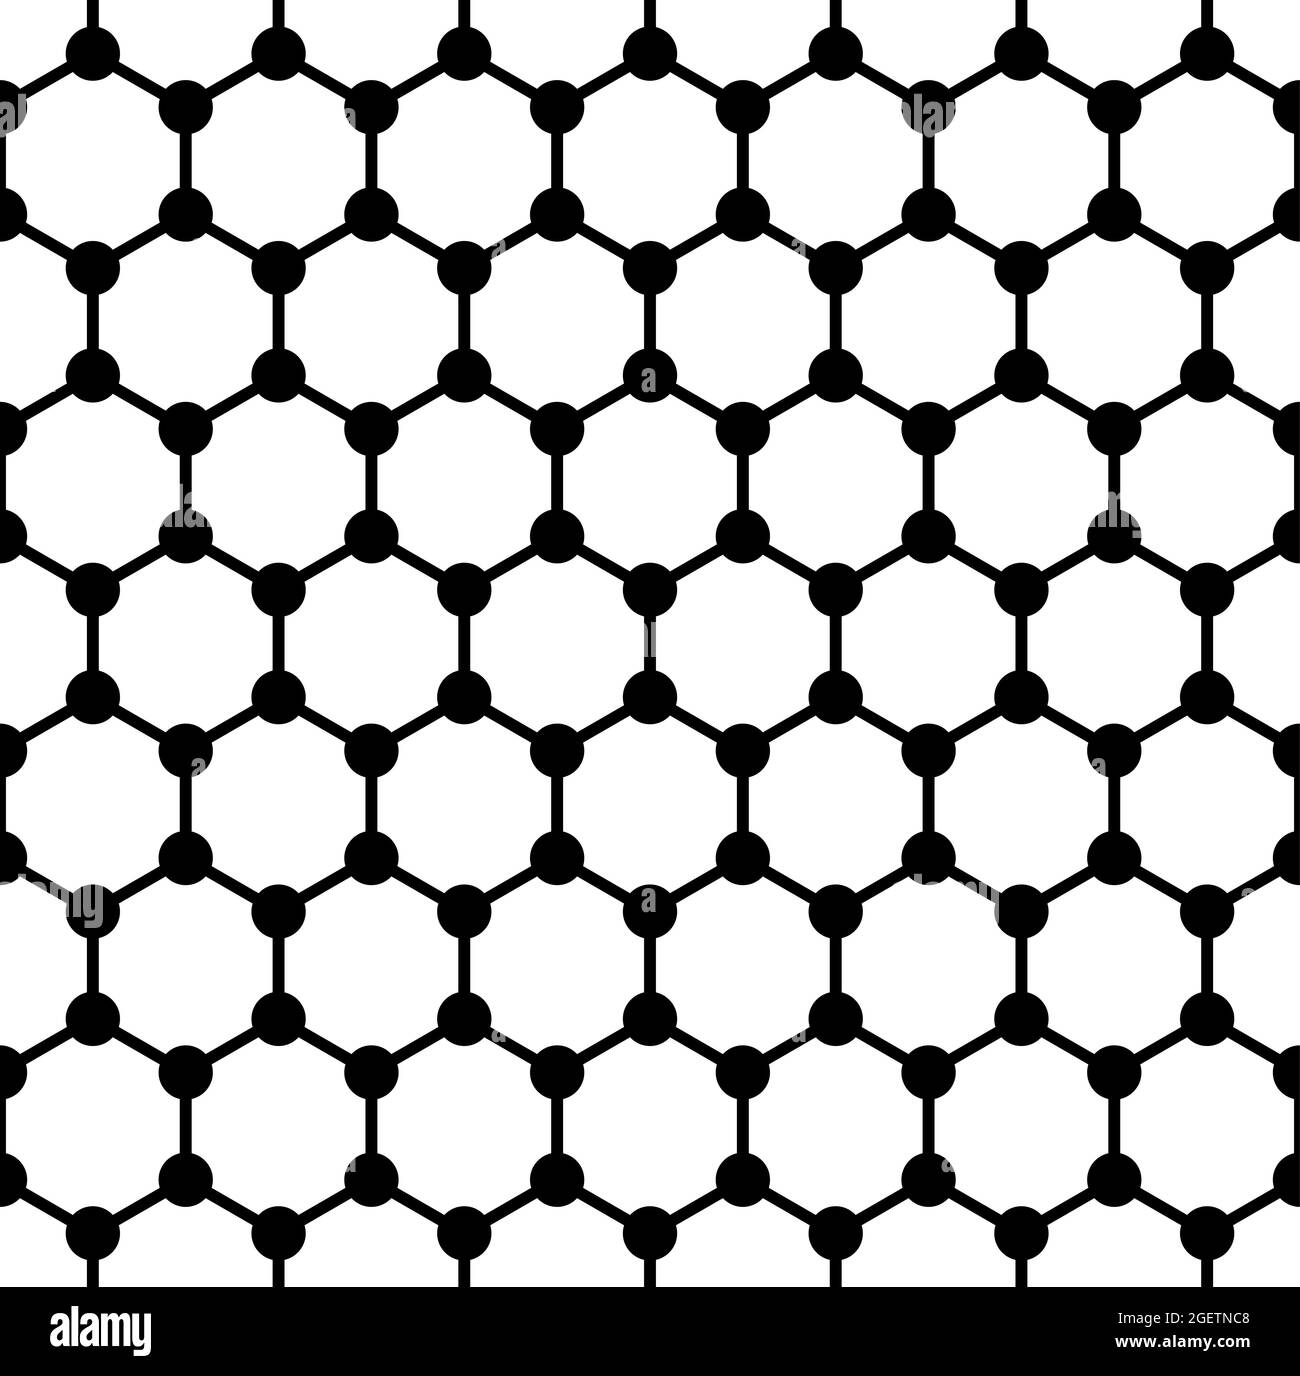 Struttura in grassetto grafene, piastrella senza giunture, struttura molecolare schematica di grafene, allotrope di carbonio, monostrato di atomi di carbonio in griglia esagonale. Foto Stock